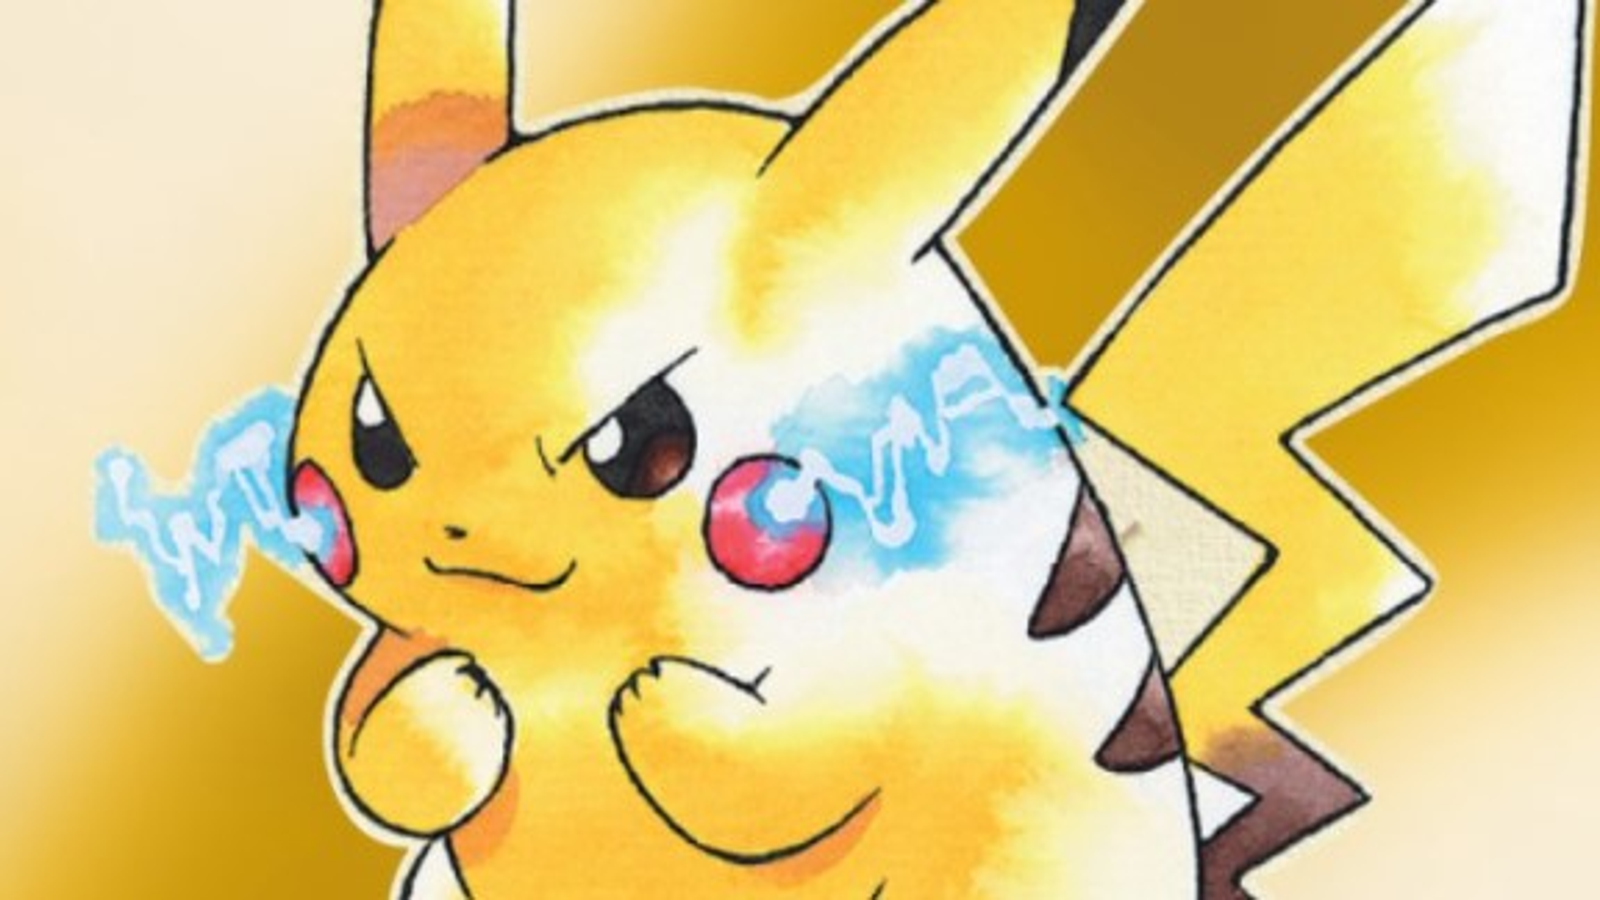 Pokémon Thunder Yellow - Yellow Remake GBA Preview 